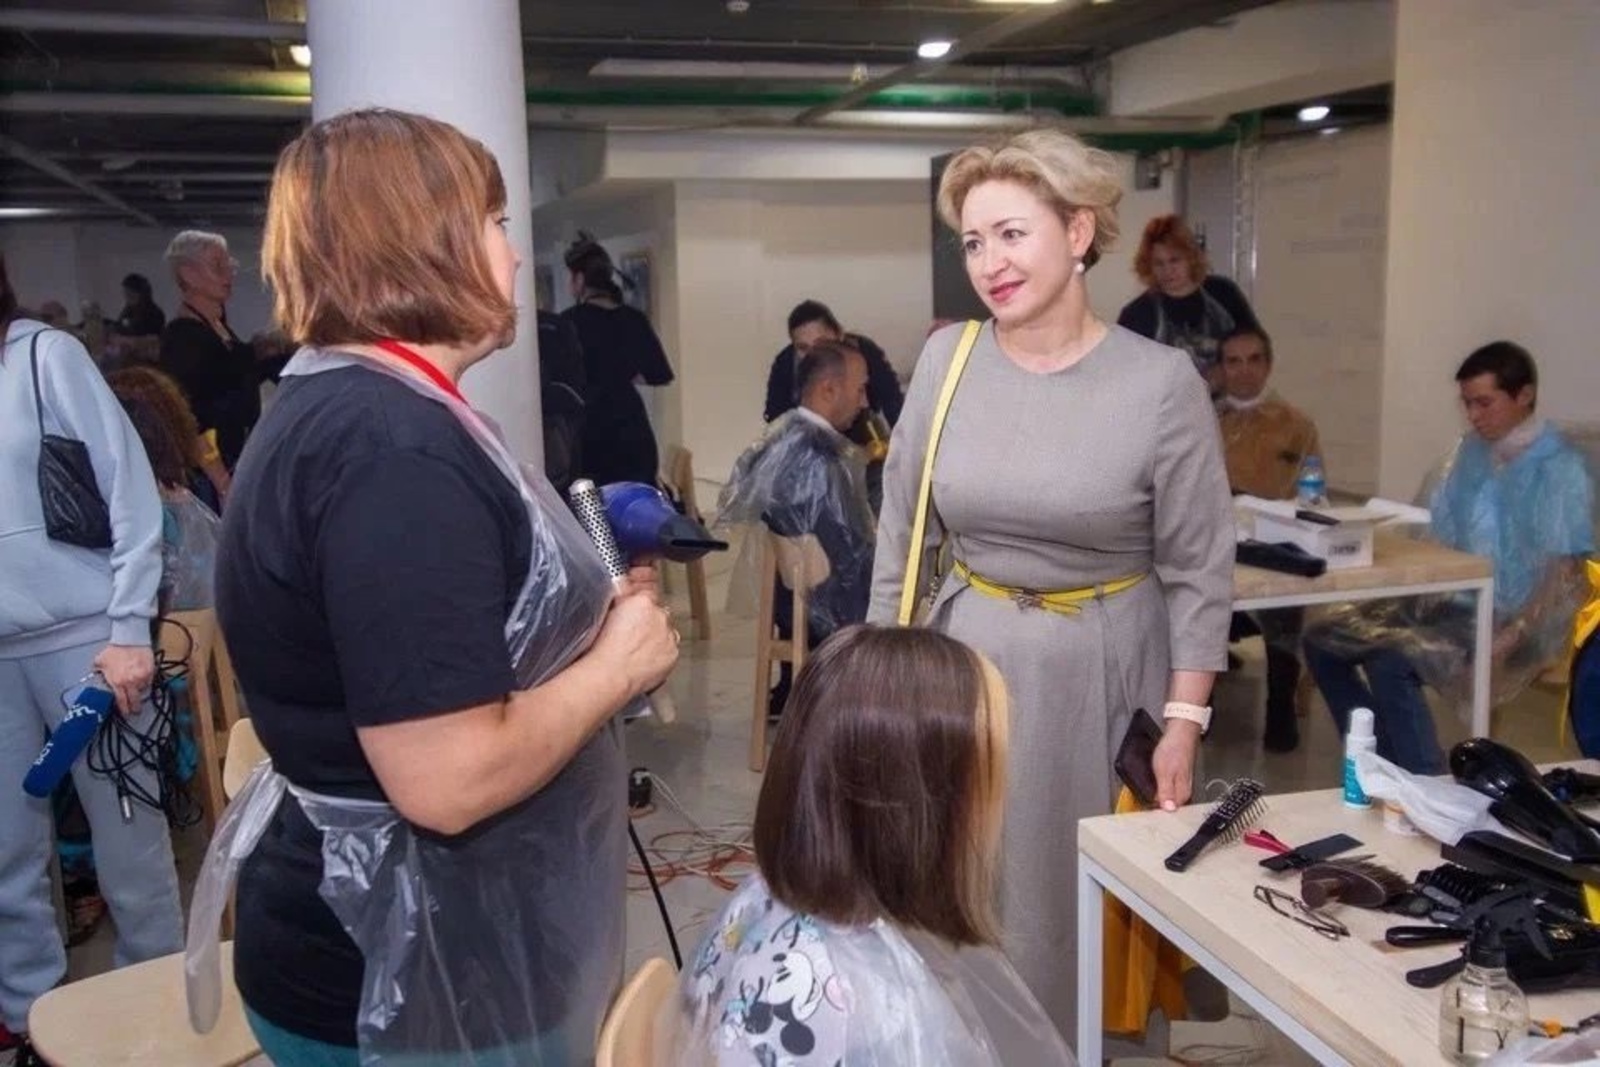 B Башкирии установлен рекорд России по благотворительной стрижке: бесплатно подстригли 1635 человек